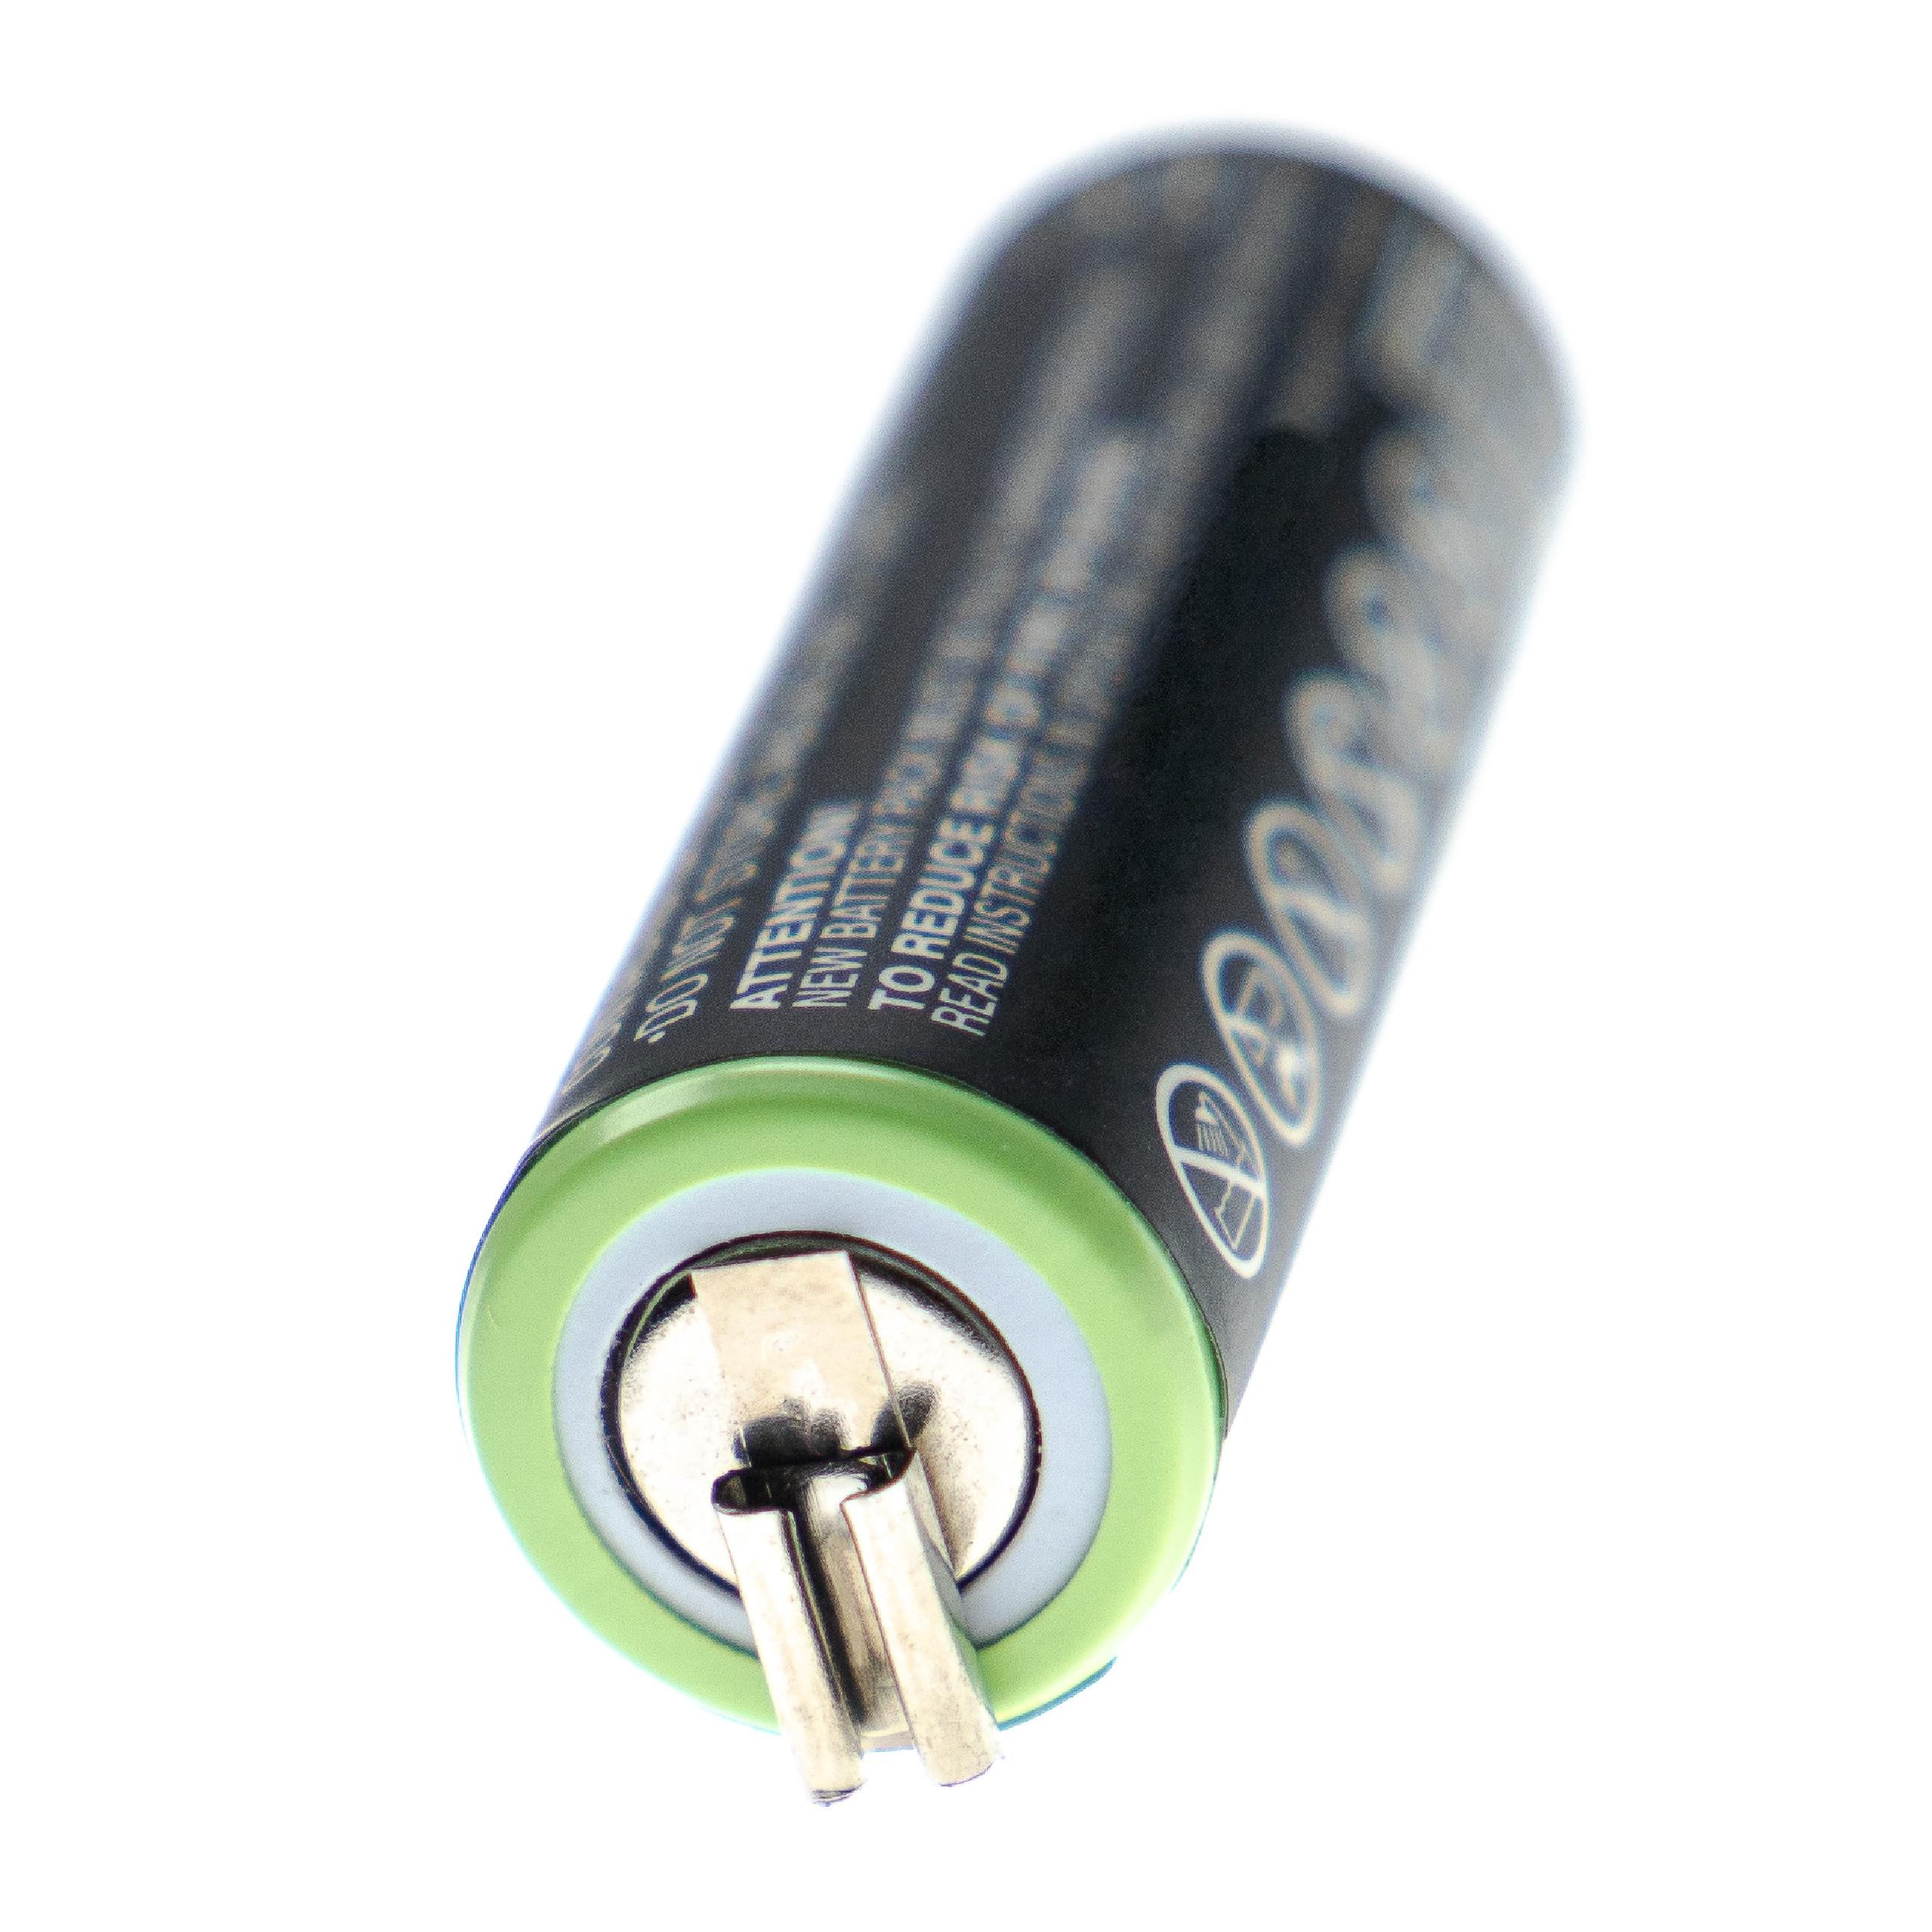 Batterie remplace Moser 1591-0062, 1590-7291, 1591-0067 pour rasoir électrique - 1200mAh 1,2V NiMH